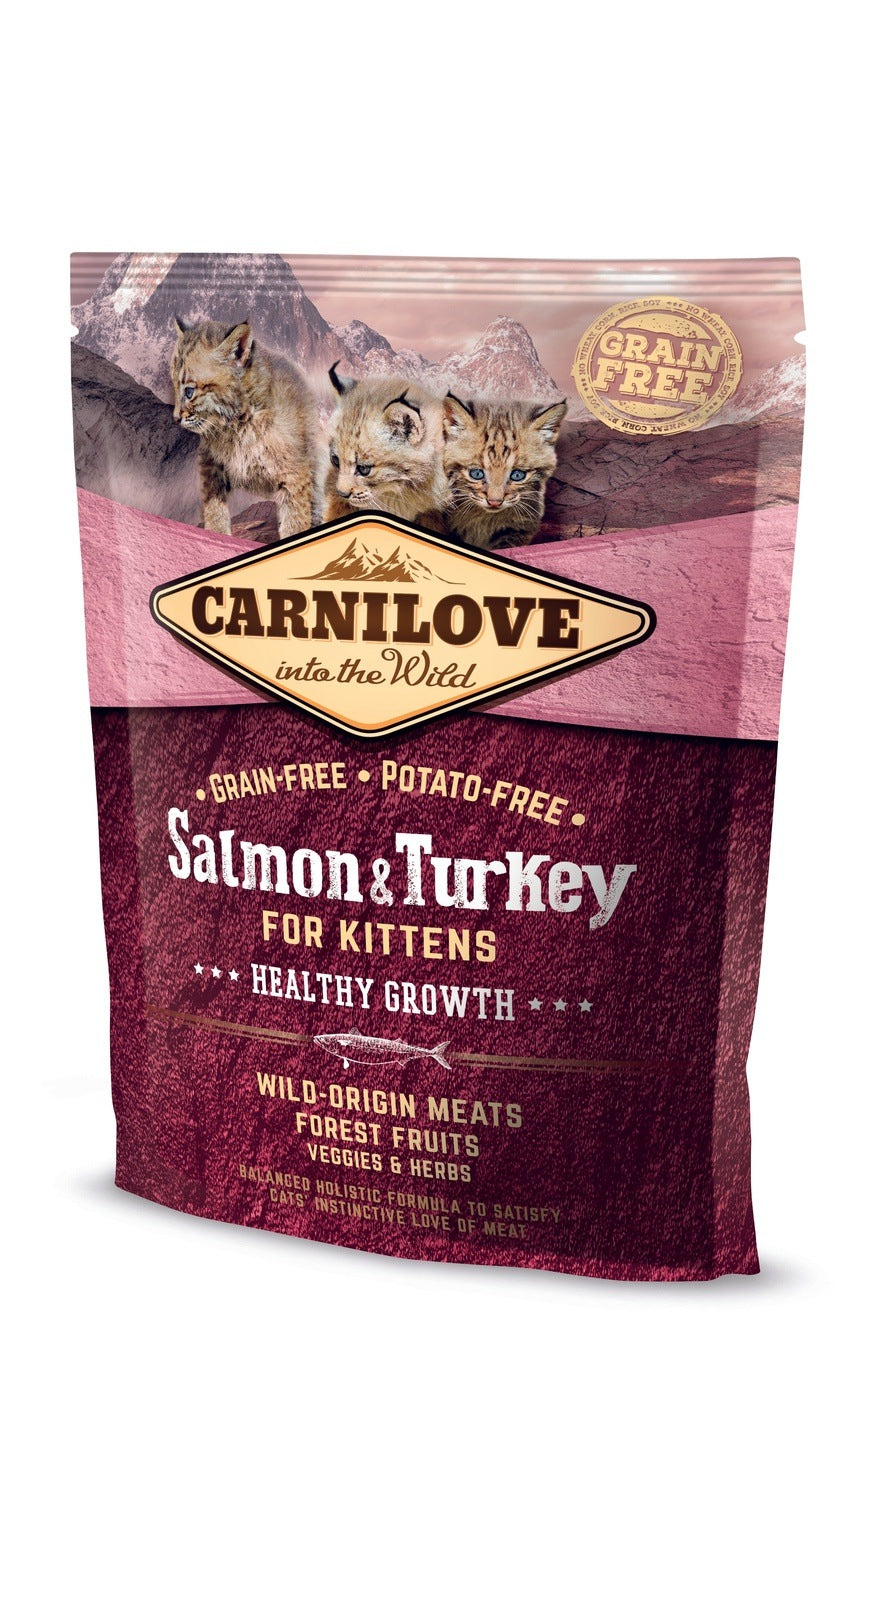 Artikel mit dem Namen Carnilove Cat Kitten - Lachs & Truthahn im Shop von zoo.de , dem Onlineshop für nachhaltiges Hundefutter und Katzenfutter.